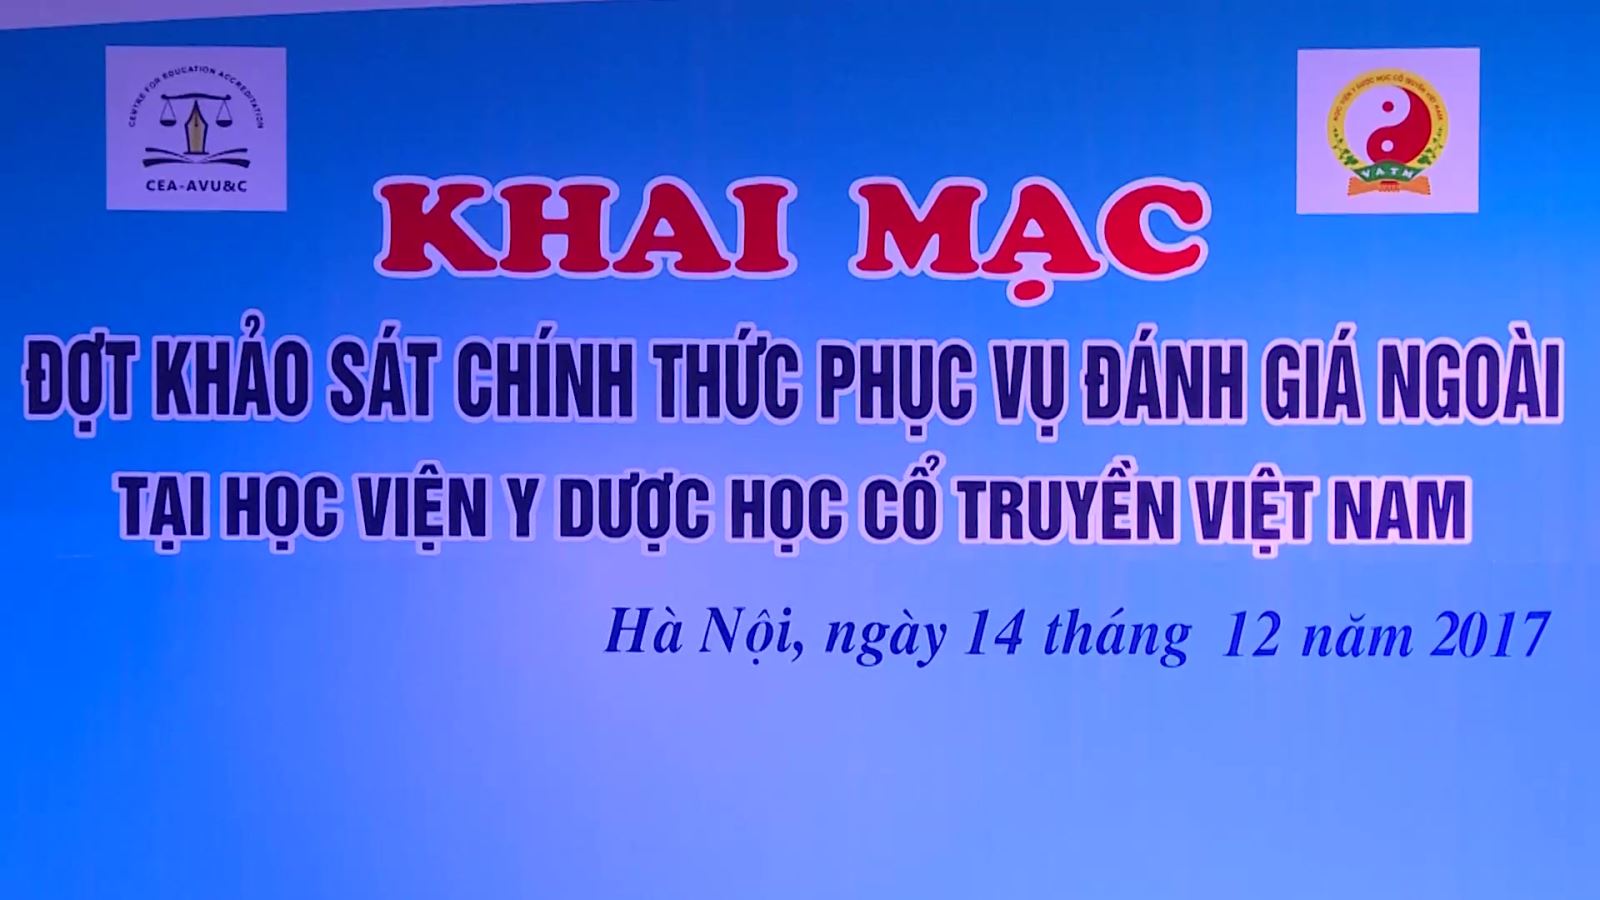 Lễ Khai mạc đợt khảo sát chính thức phục vụ đánh giá ngoài (ĐGN) tại Học viện Y Dược học cổ truyền Việt Nam